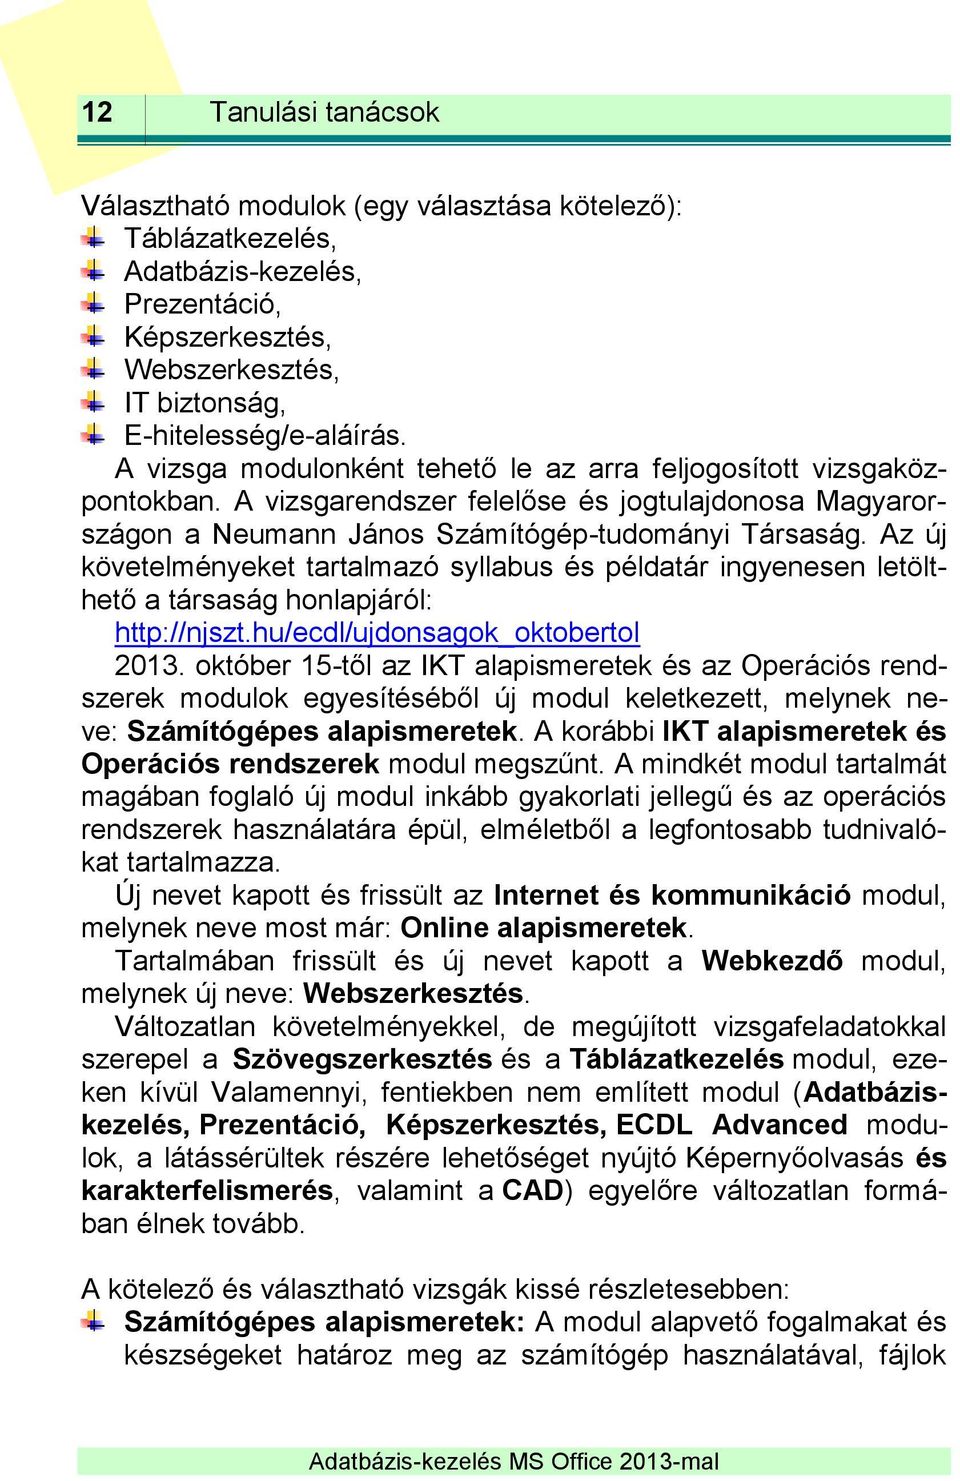 Az új követelményeket tartalmazó syllabus és példatár ingyenesen letölthető a társaság honlapjáról: http://njszt.hu/ecdl/ujdonsagok_oktobertol 2013.